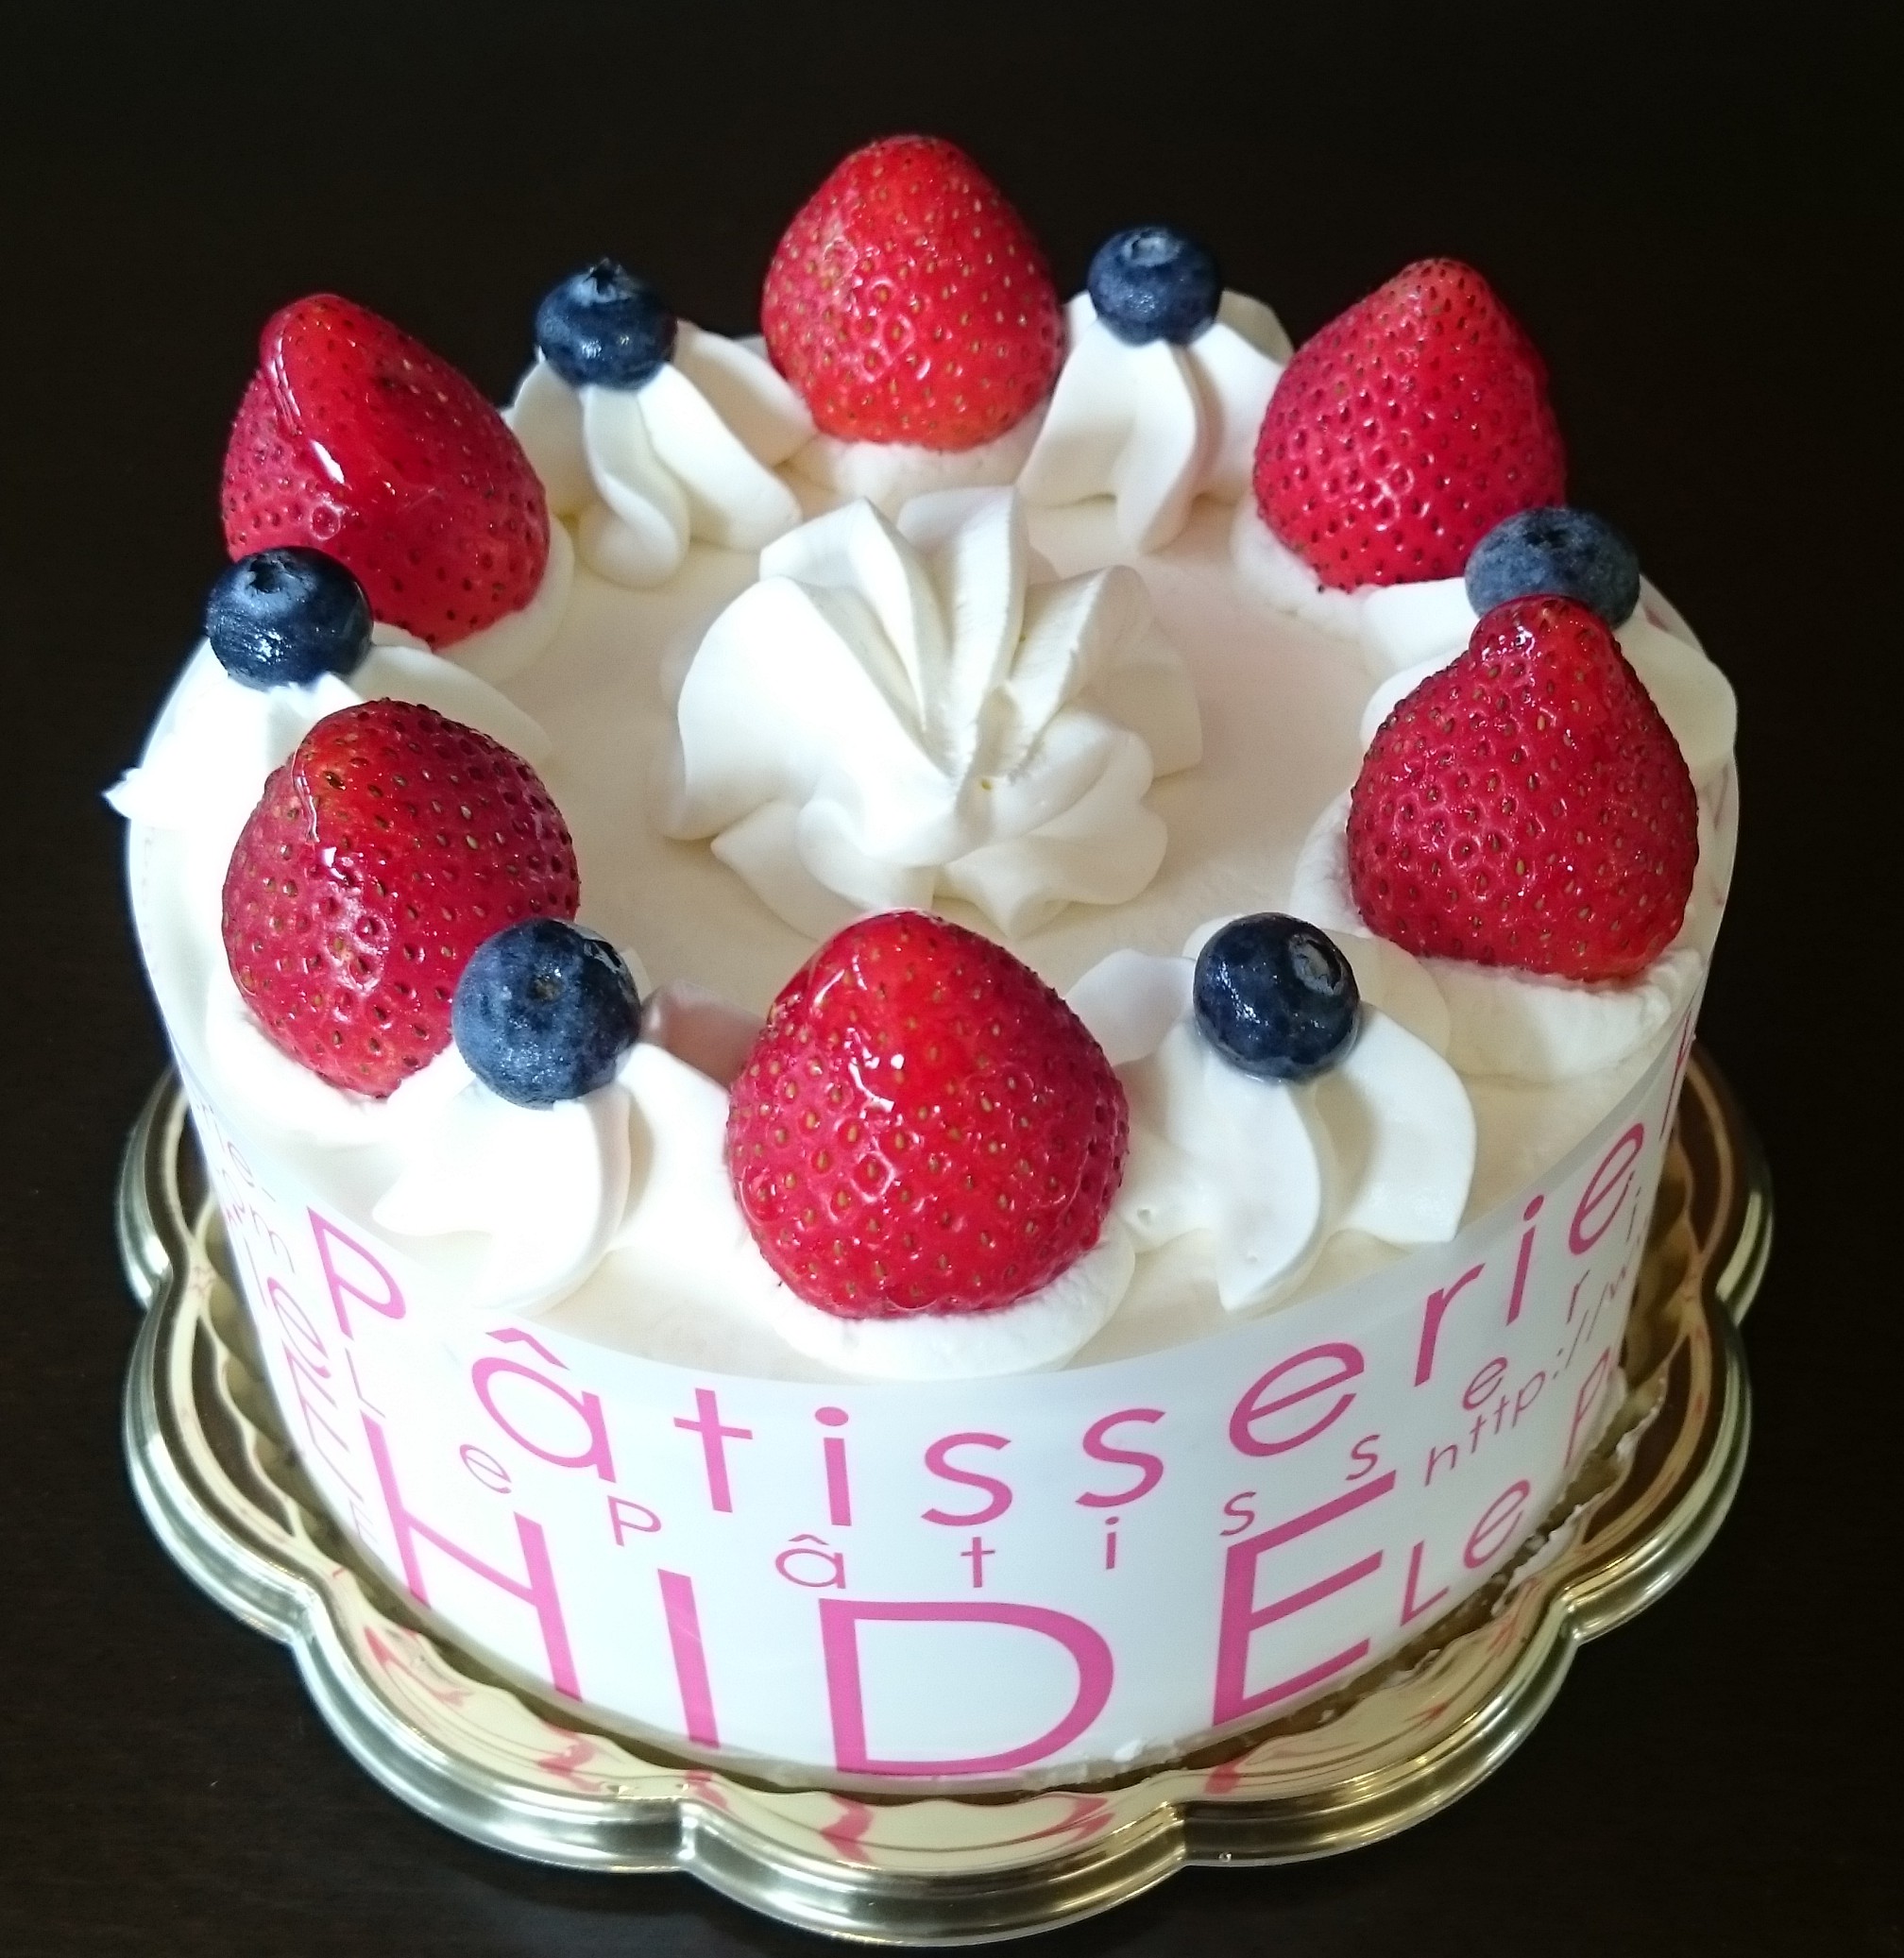 22最新 群馬県で誕生日ケーキを頼めるお店 おすすめの人気店 有名店もすべて網羅 誕生日ケーキセレクト